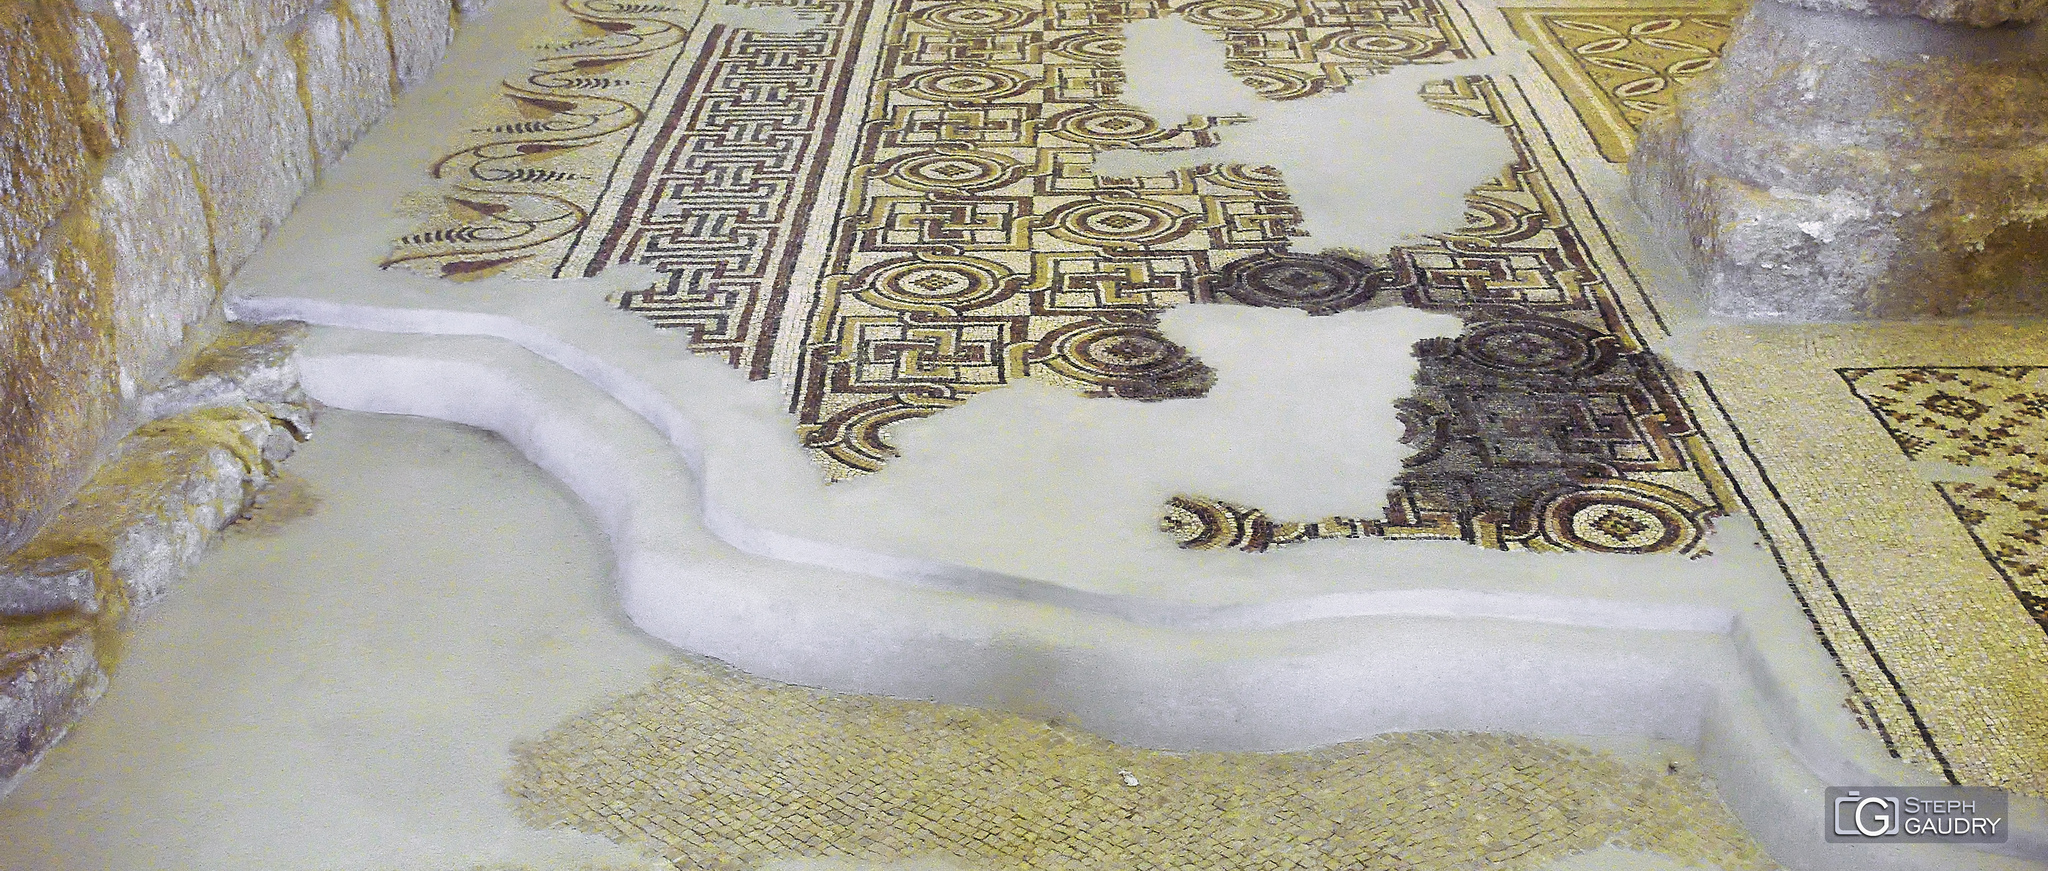 Couches de mosaïques de la basilique du mémorial de Moïse au Mont Nébo [Click to start slideshow]